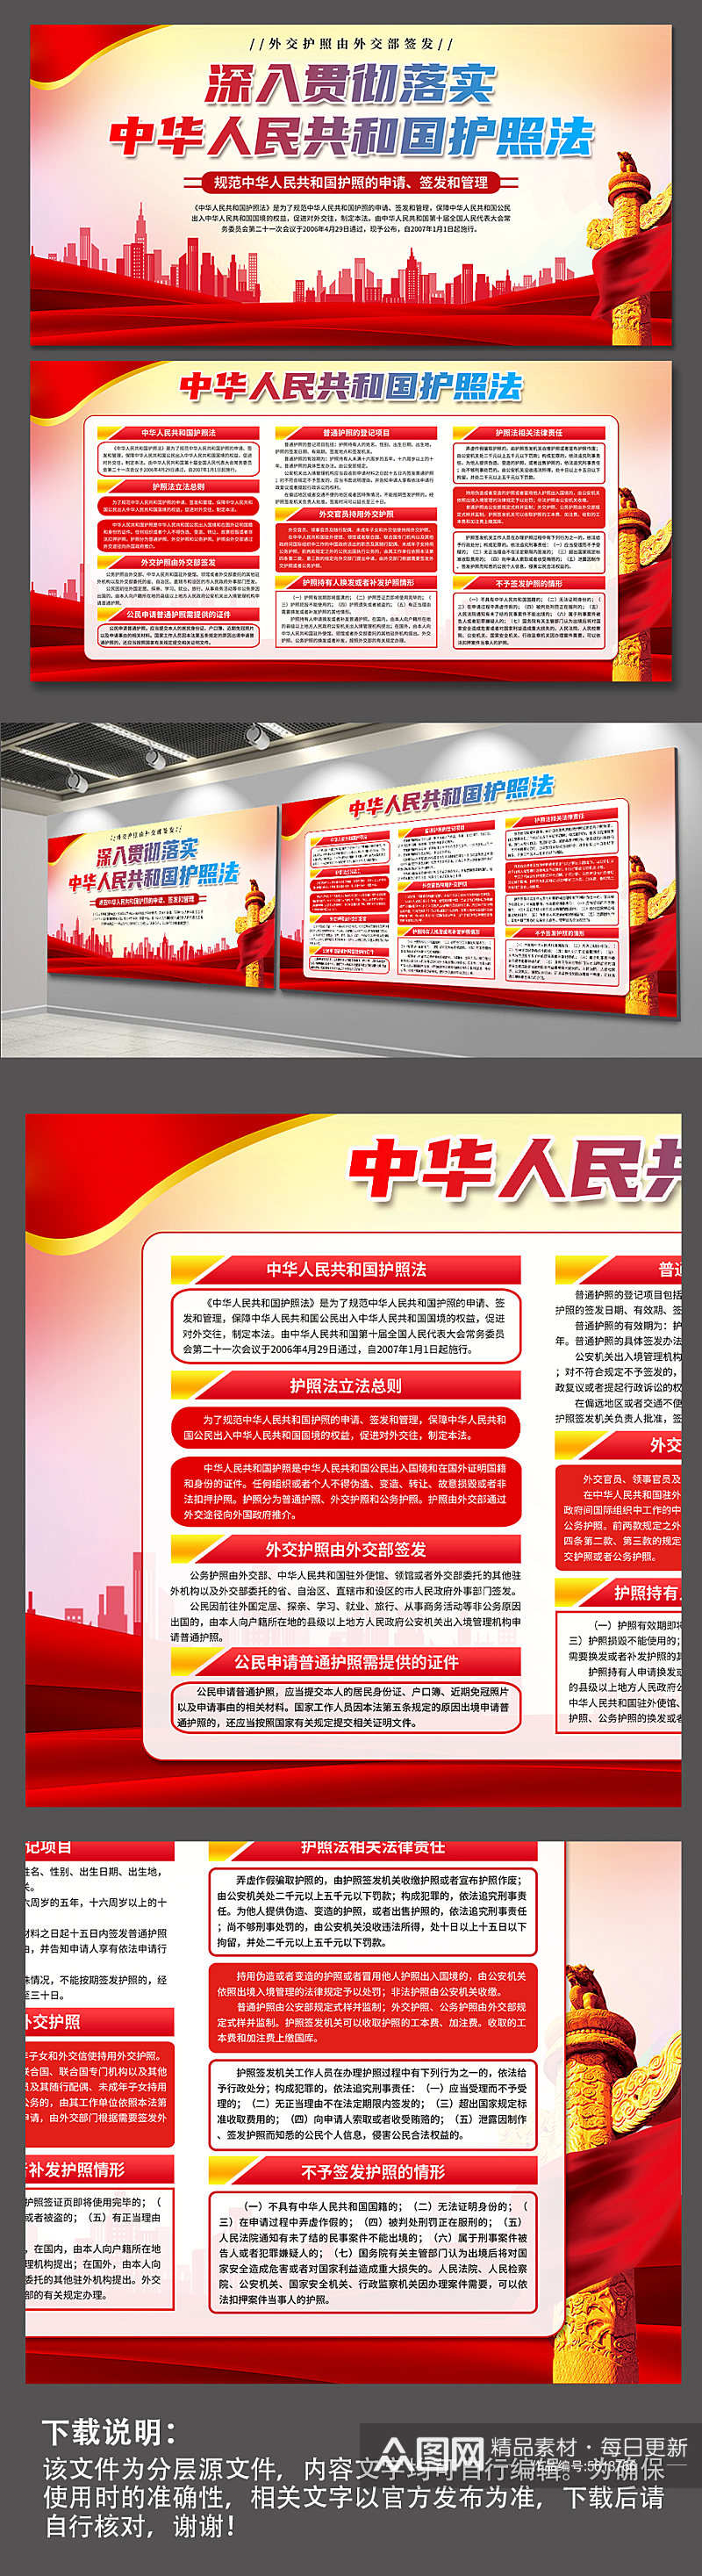 中华人民共和国护照法党建展板素材